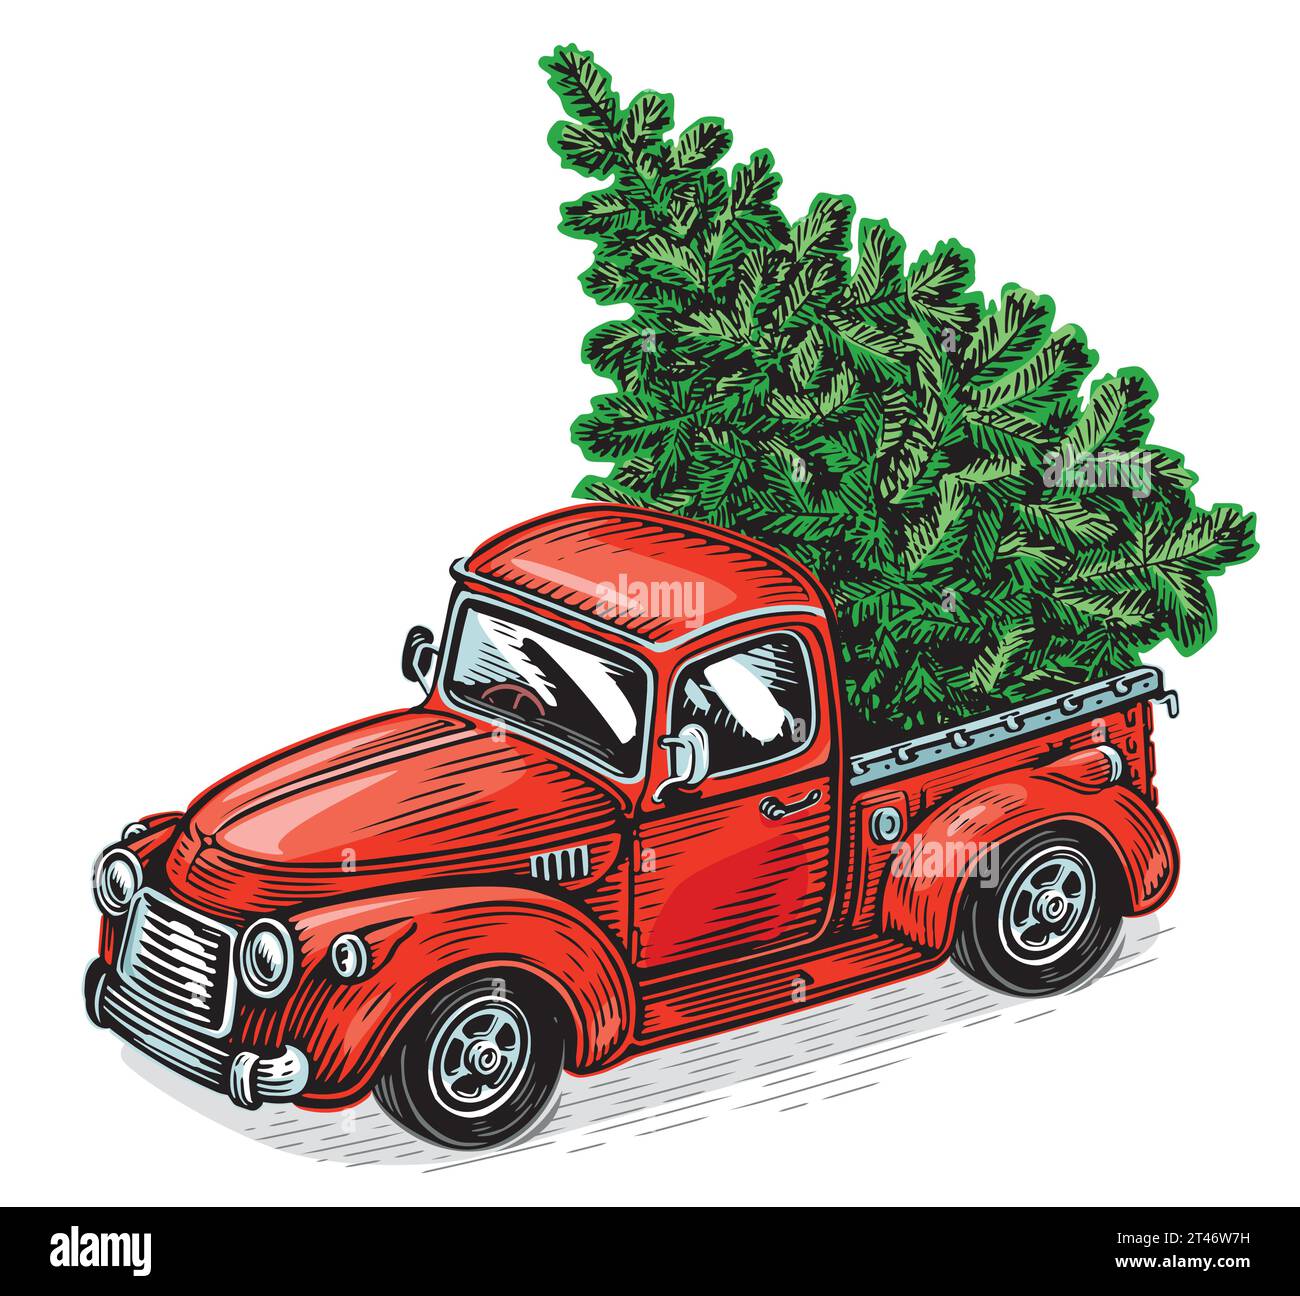 Weihnachtsroter Retro-Pick-up-Truck mit grüner Kiefer. Vektor-Illustration zu glücklichen Feiertagen Stock Vektor